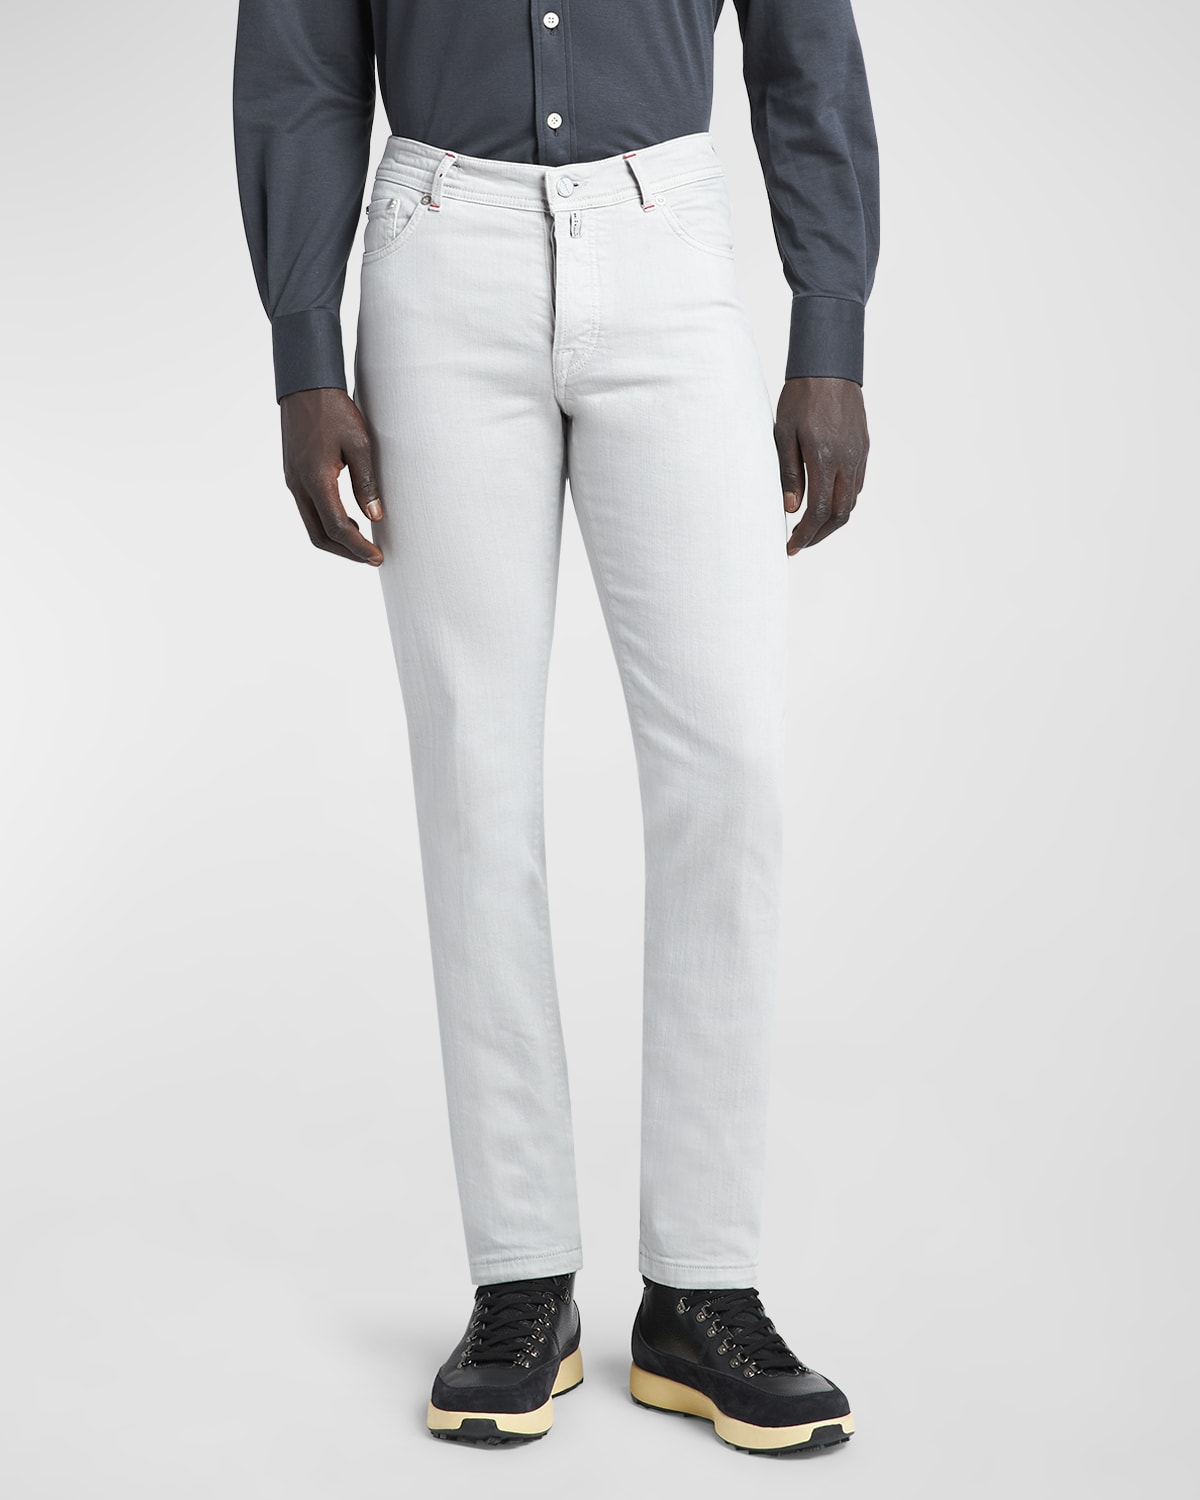 Kiton Men's Slim 5-pocket Pants In Light Gray